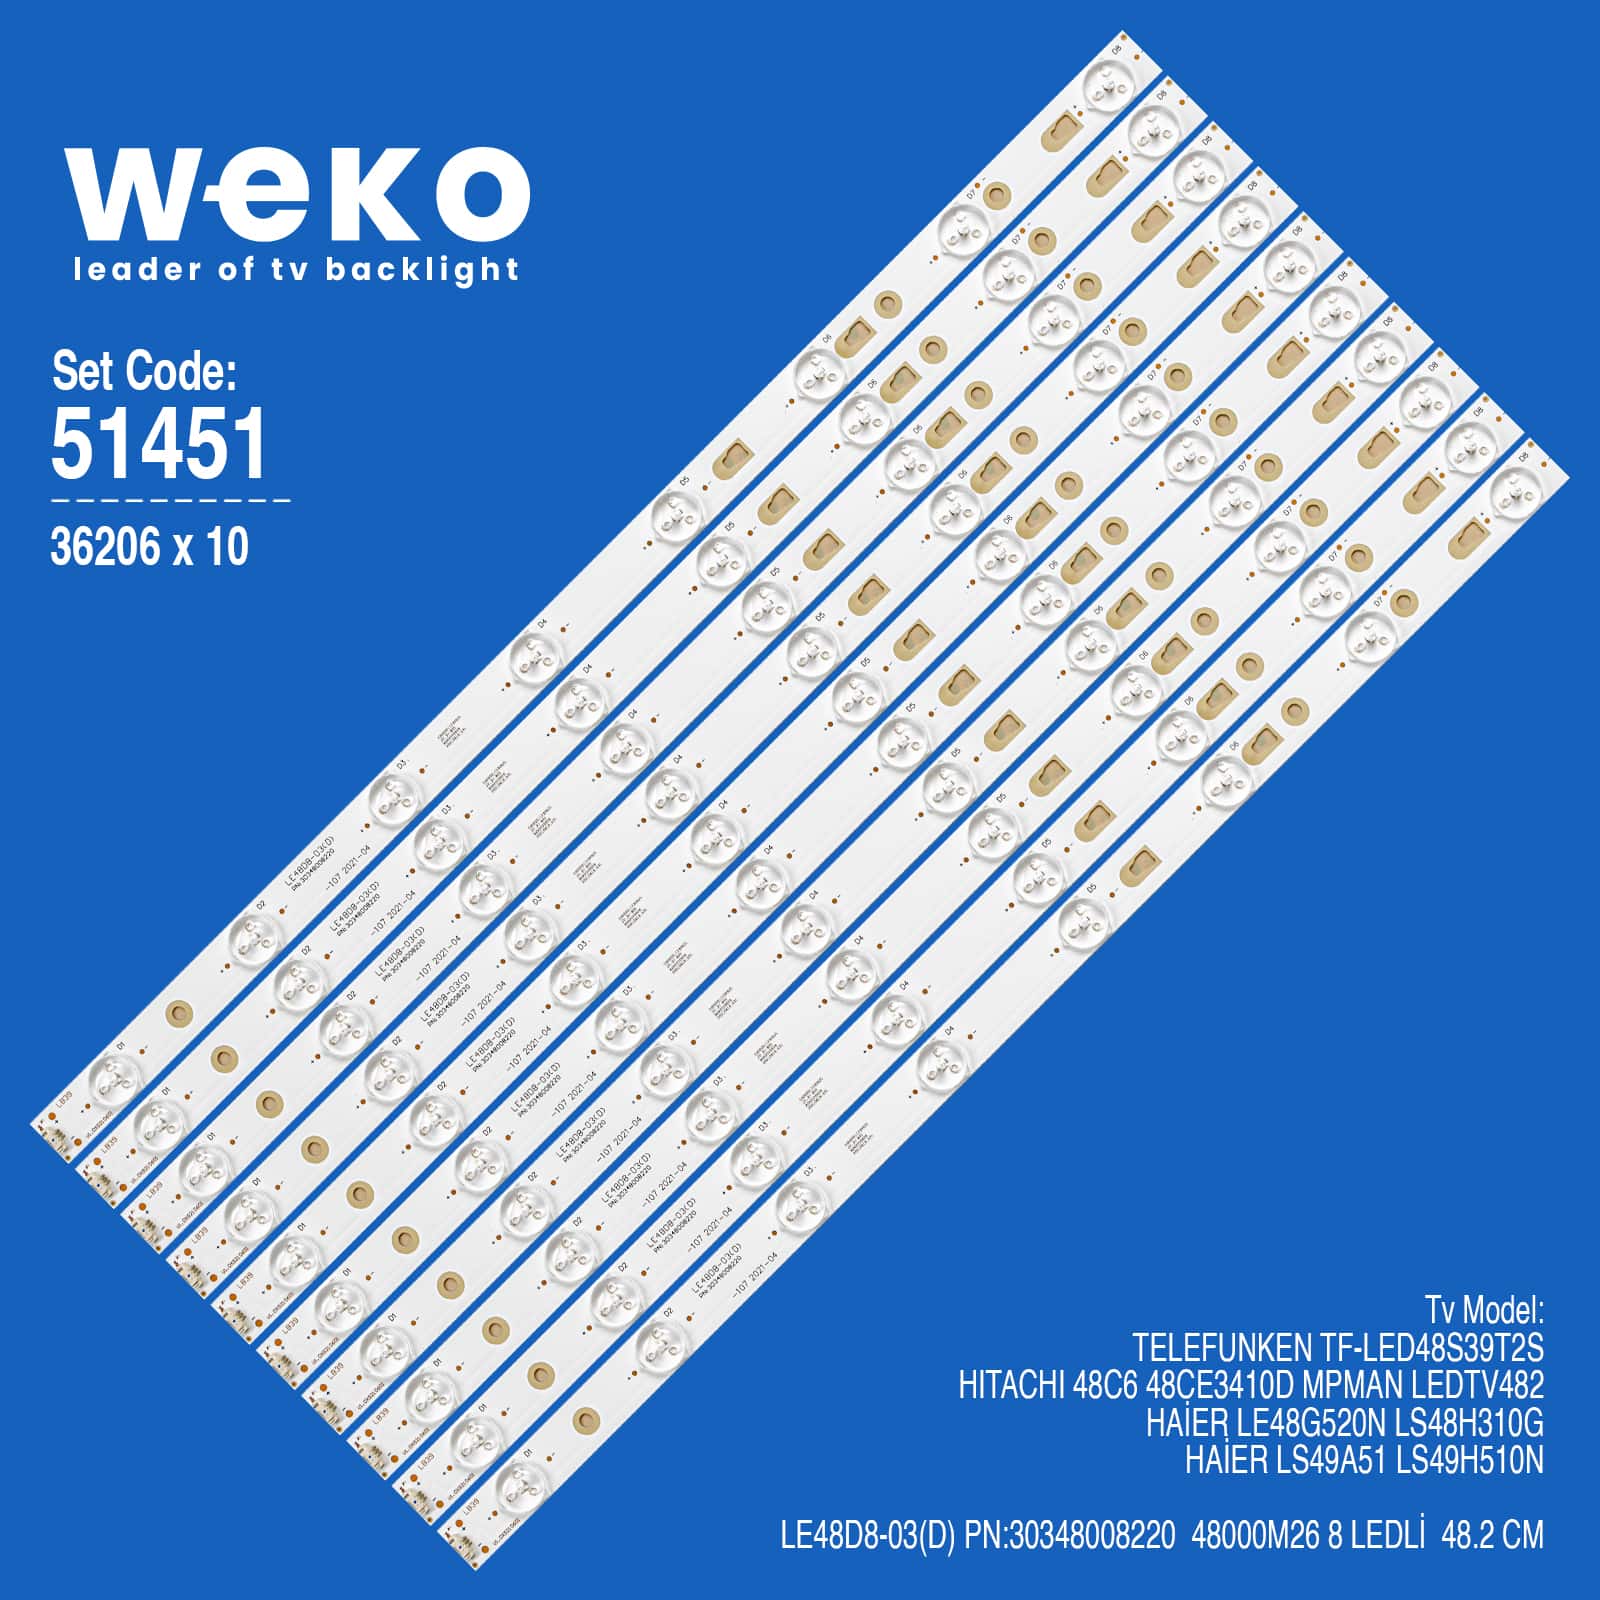 WKSET-6451 36206X10 LE48D8-03(D) PN:30348008220  48000M26  10 ADET LED BAR